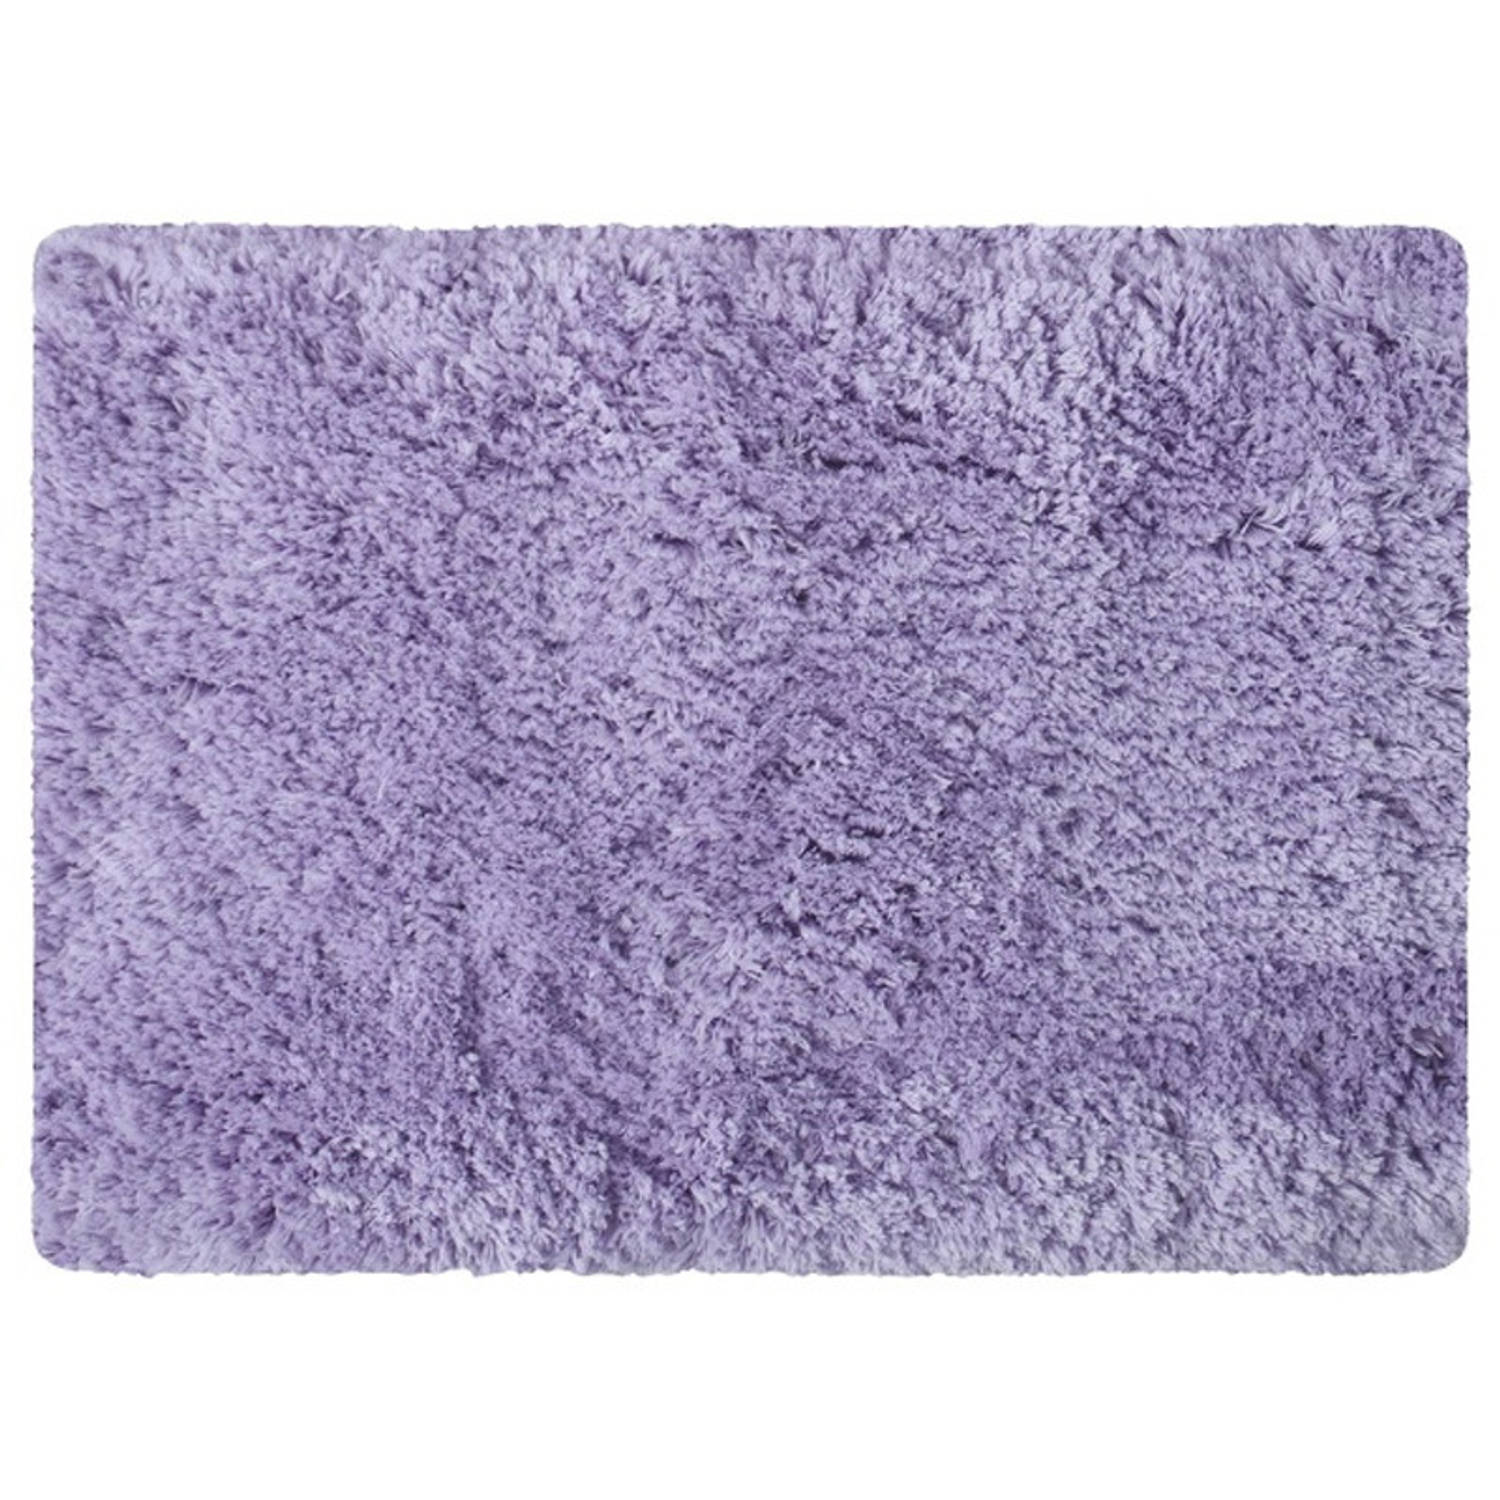 MSV Badkamerkleedje/badmat tapijt - voor de vloer - lila paars - 50 x 70 cm - Microfibre - langharig